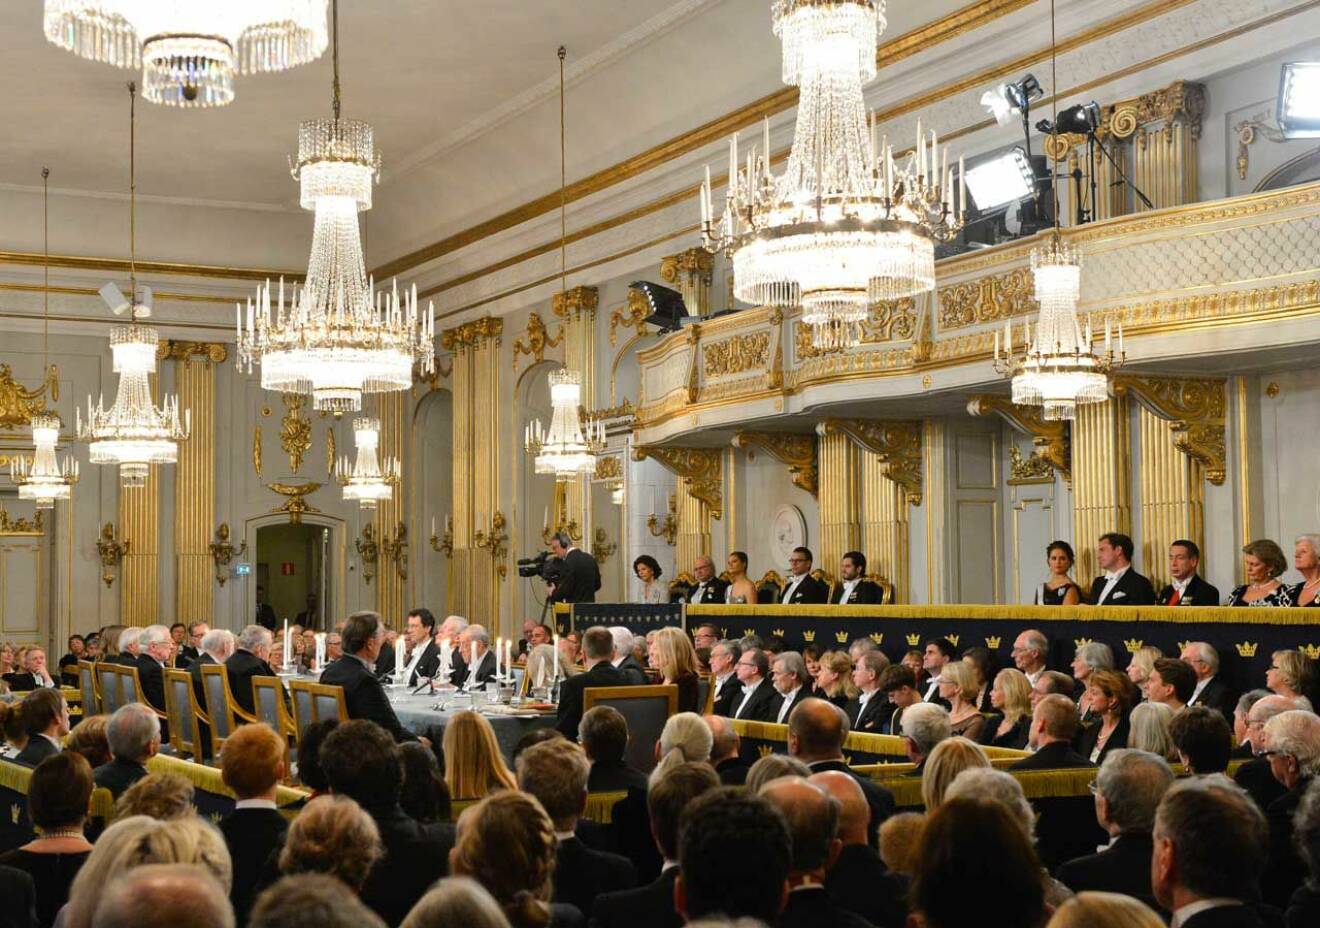 Svenska Akademien firar alltid sin högtidsdag runt den 20 december och ceremonin i Börssalen följer fortfarande Gustaf III:s anvisningar. I publiken sitter 400 särskilt inbjudna gäster och klädkoden är frack. Till höger ser du kungafamiljen.